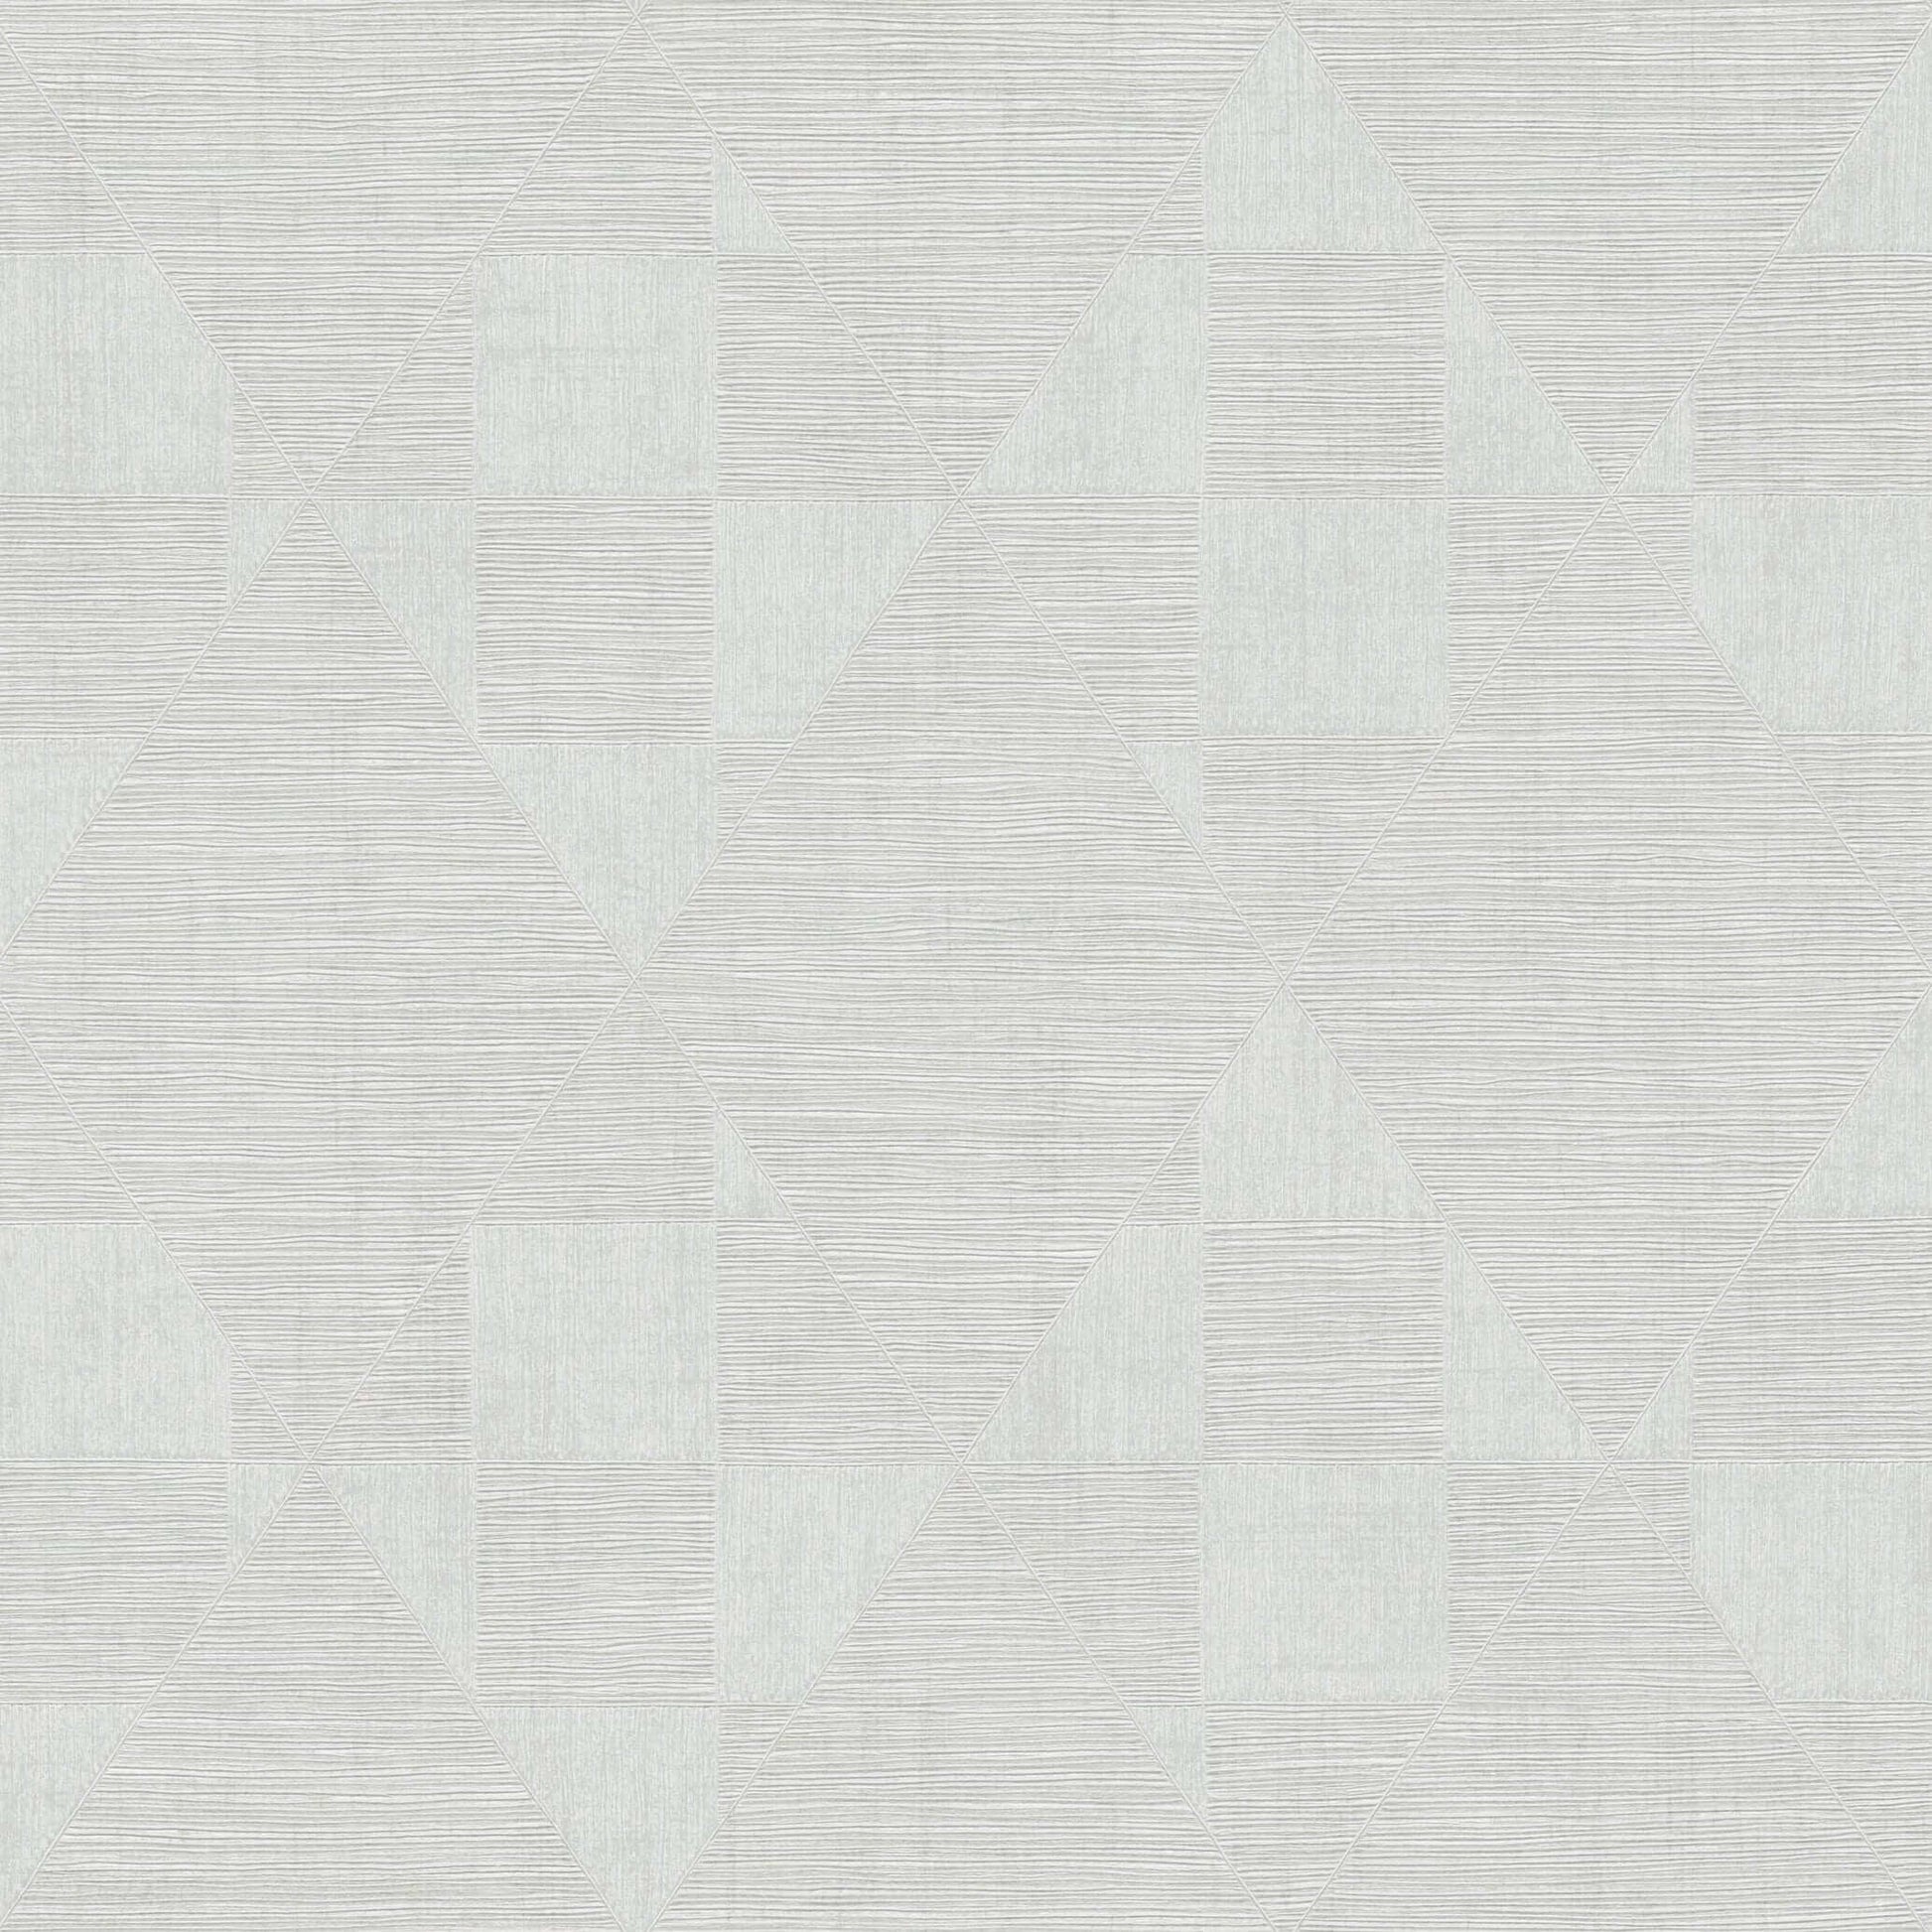 Wallpaper  -  AS Creation Titanium 3D Diamond Light Grey Wallpaper - 381963  -  60001872